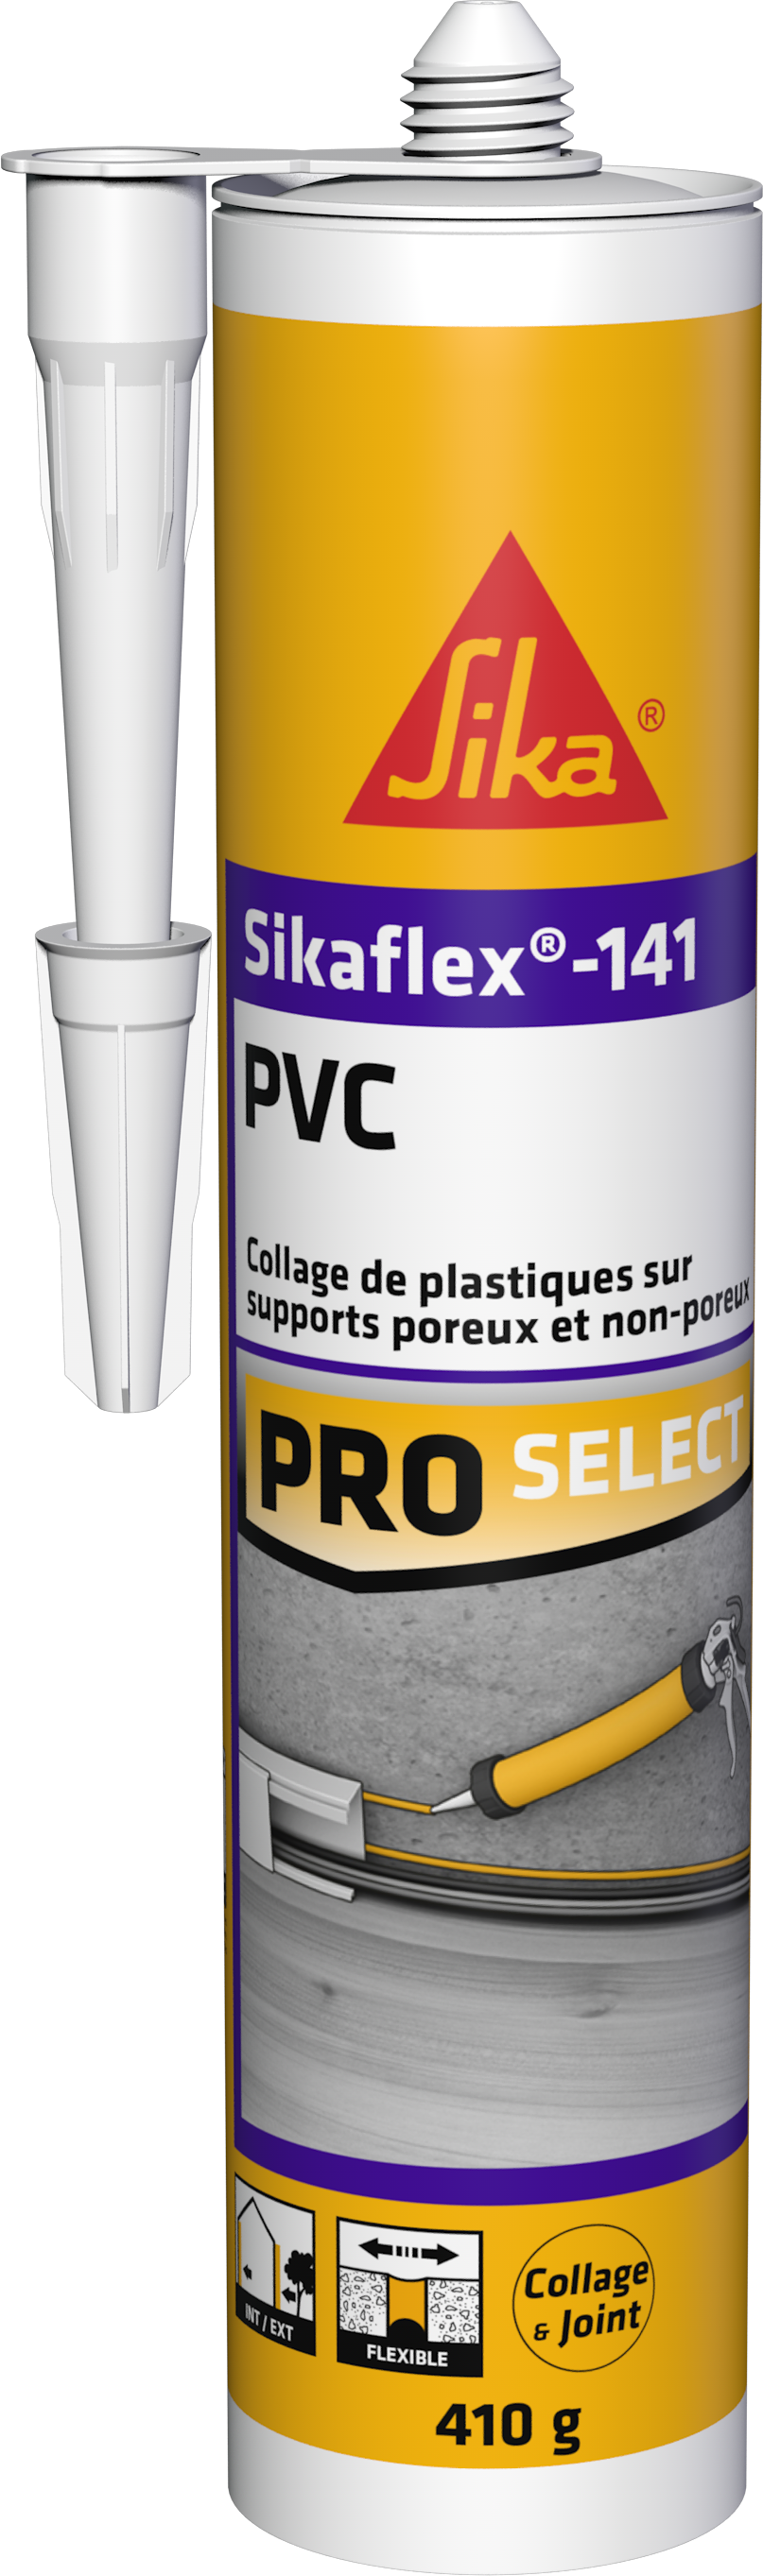 Mastic colle pour plastique et PVC Sikaflex 141 410g - SIKA